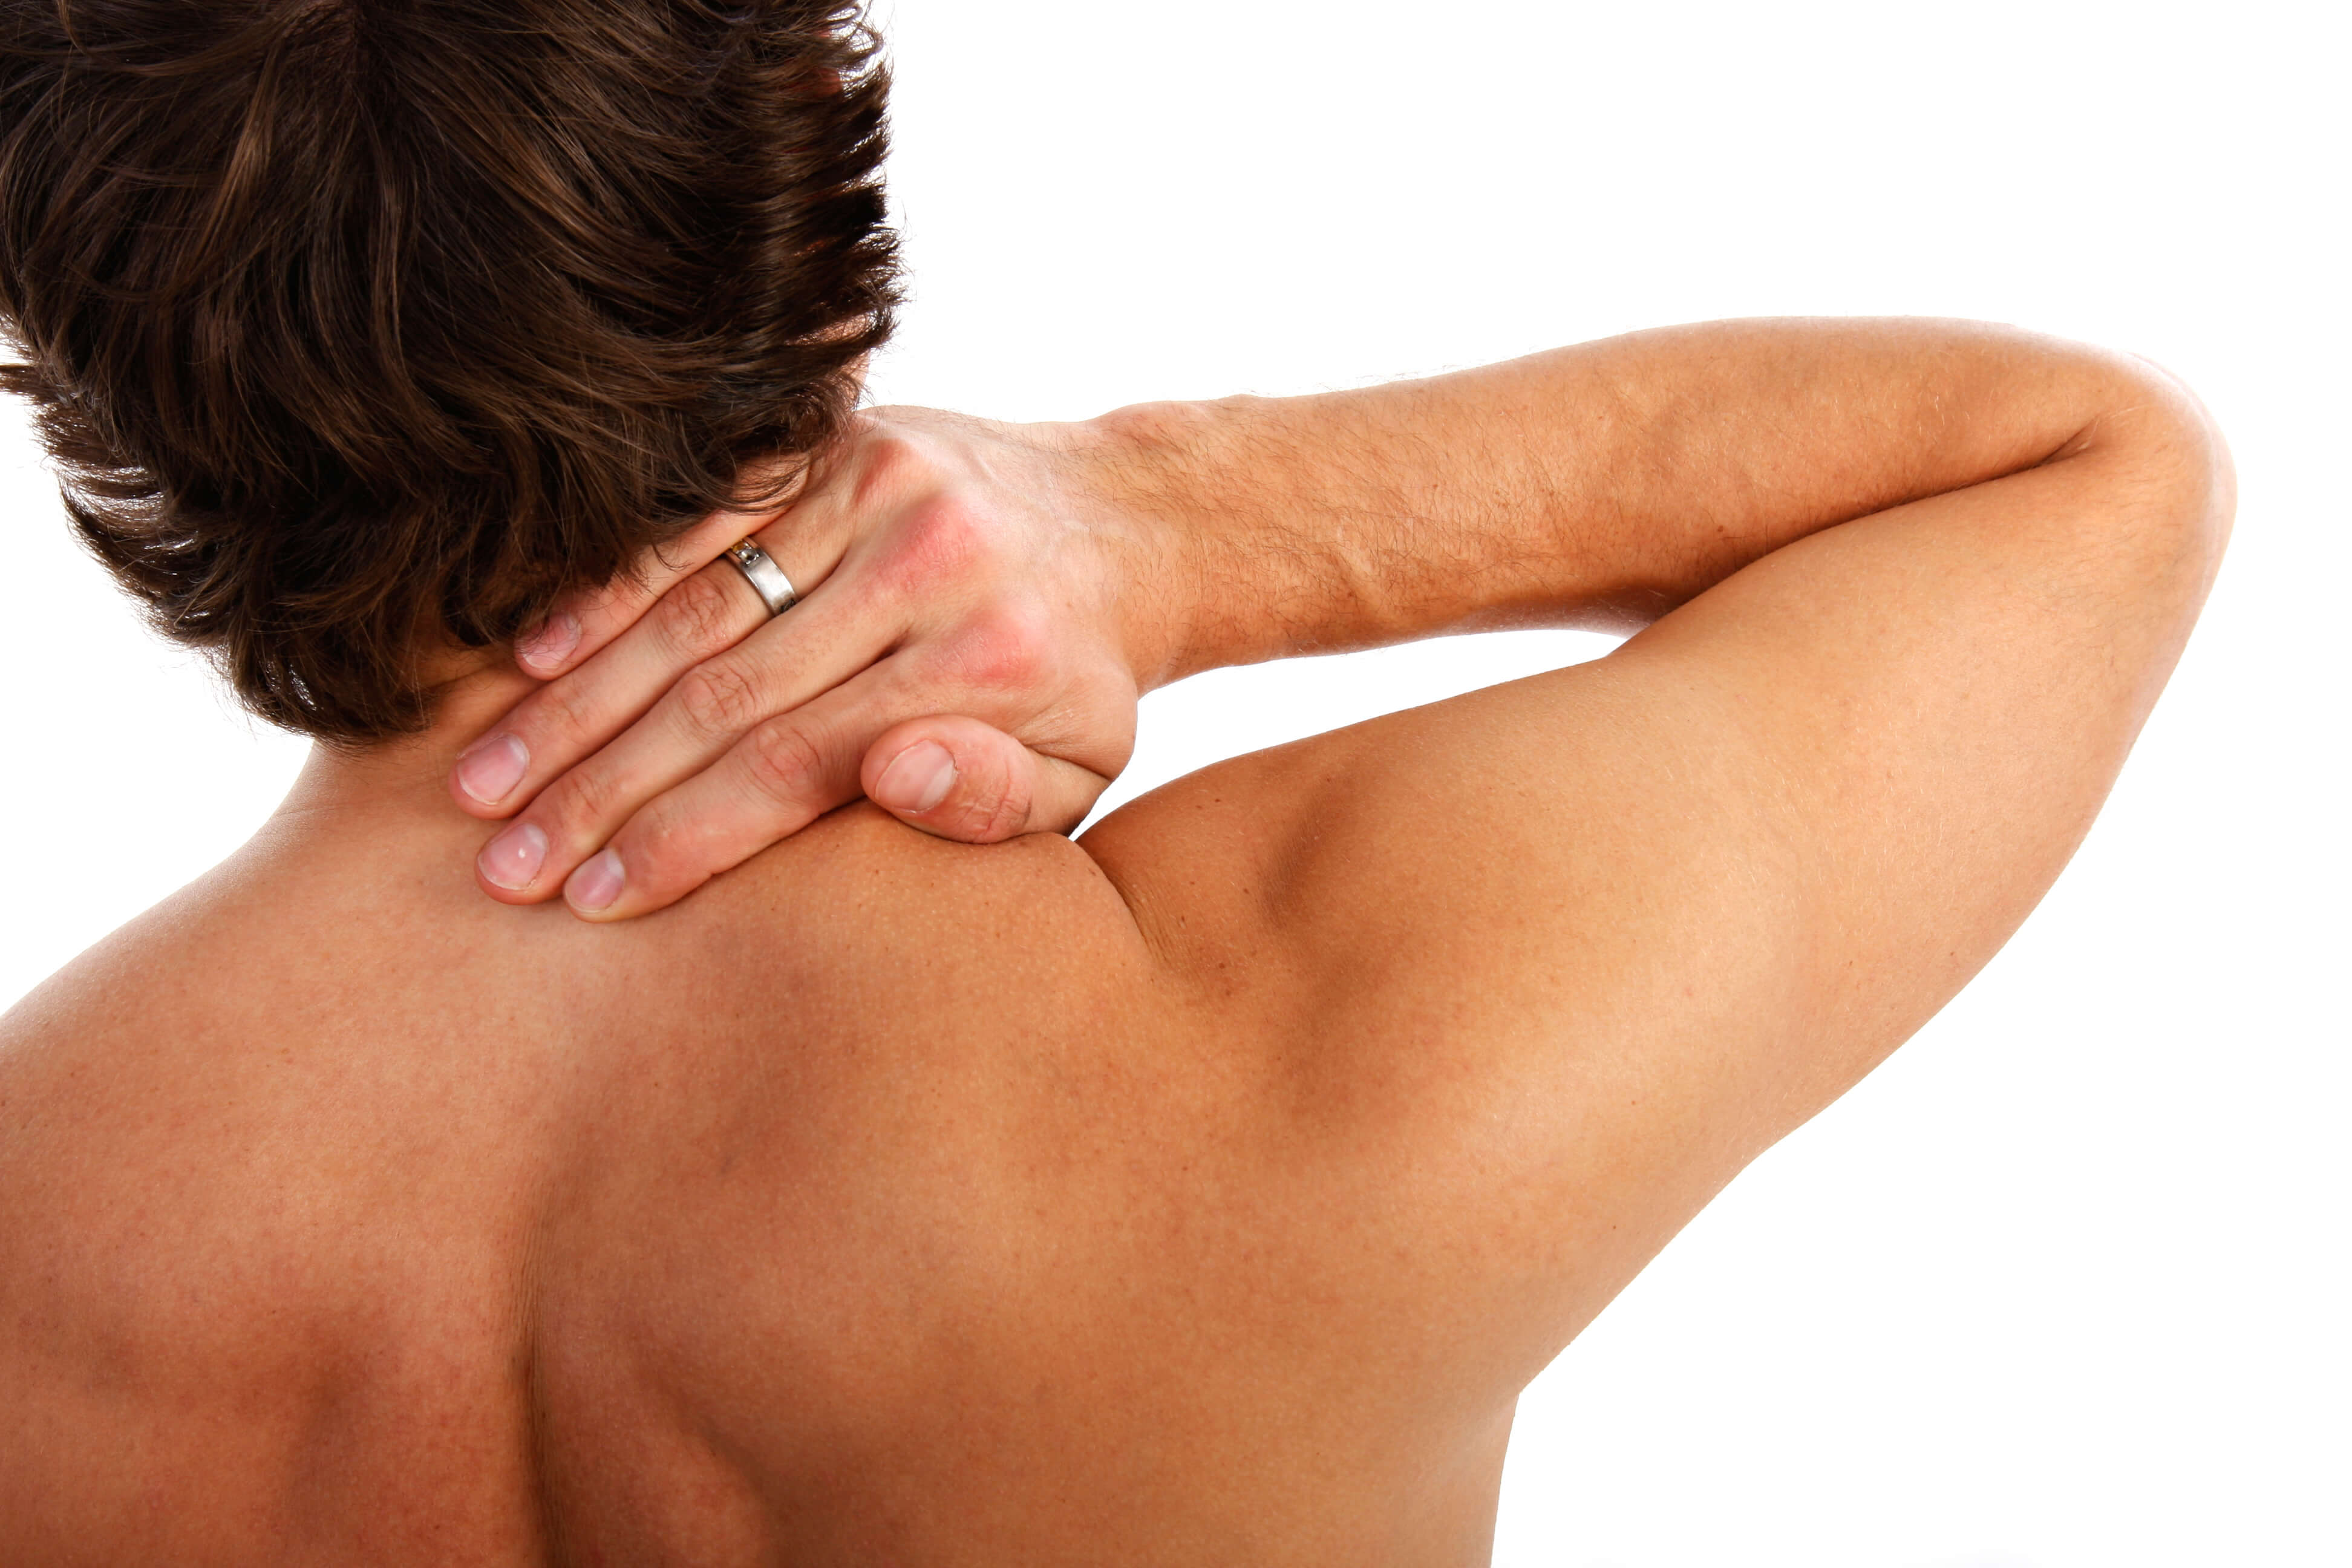 Upper Back Pain: Burswood Health, Chiropractors